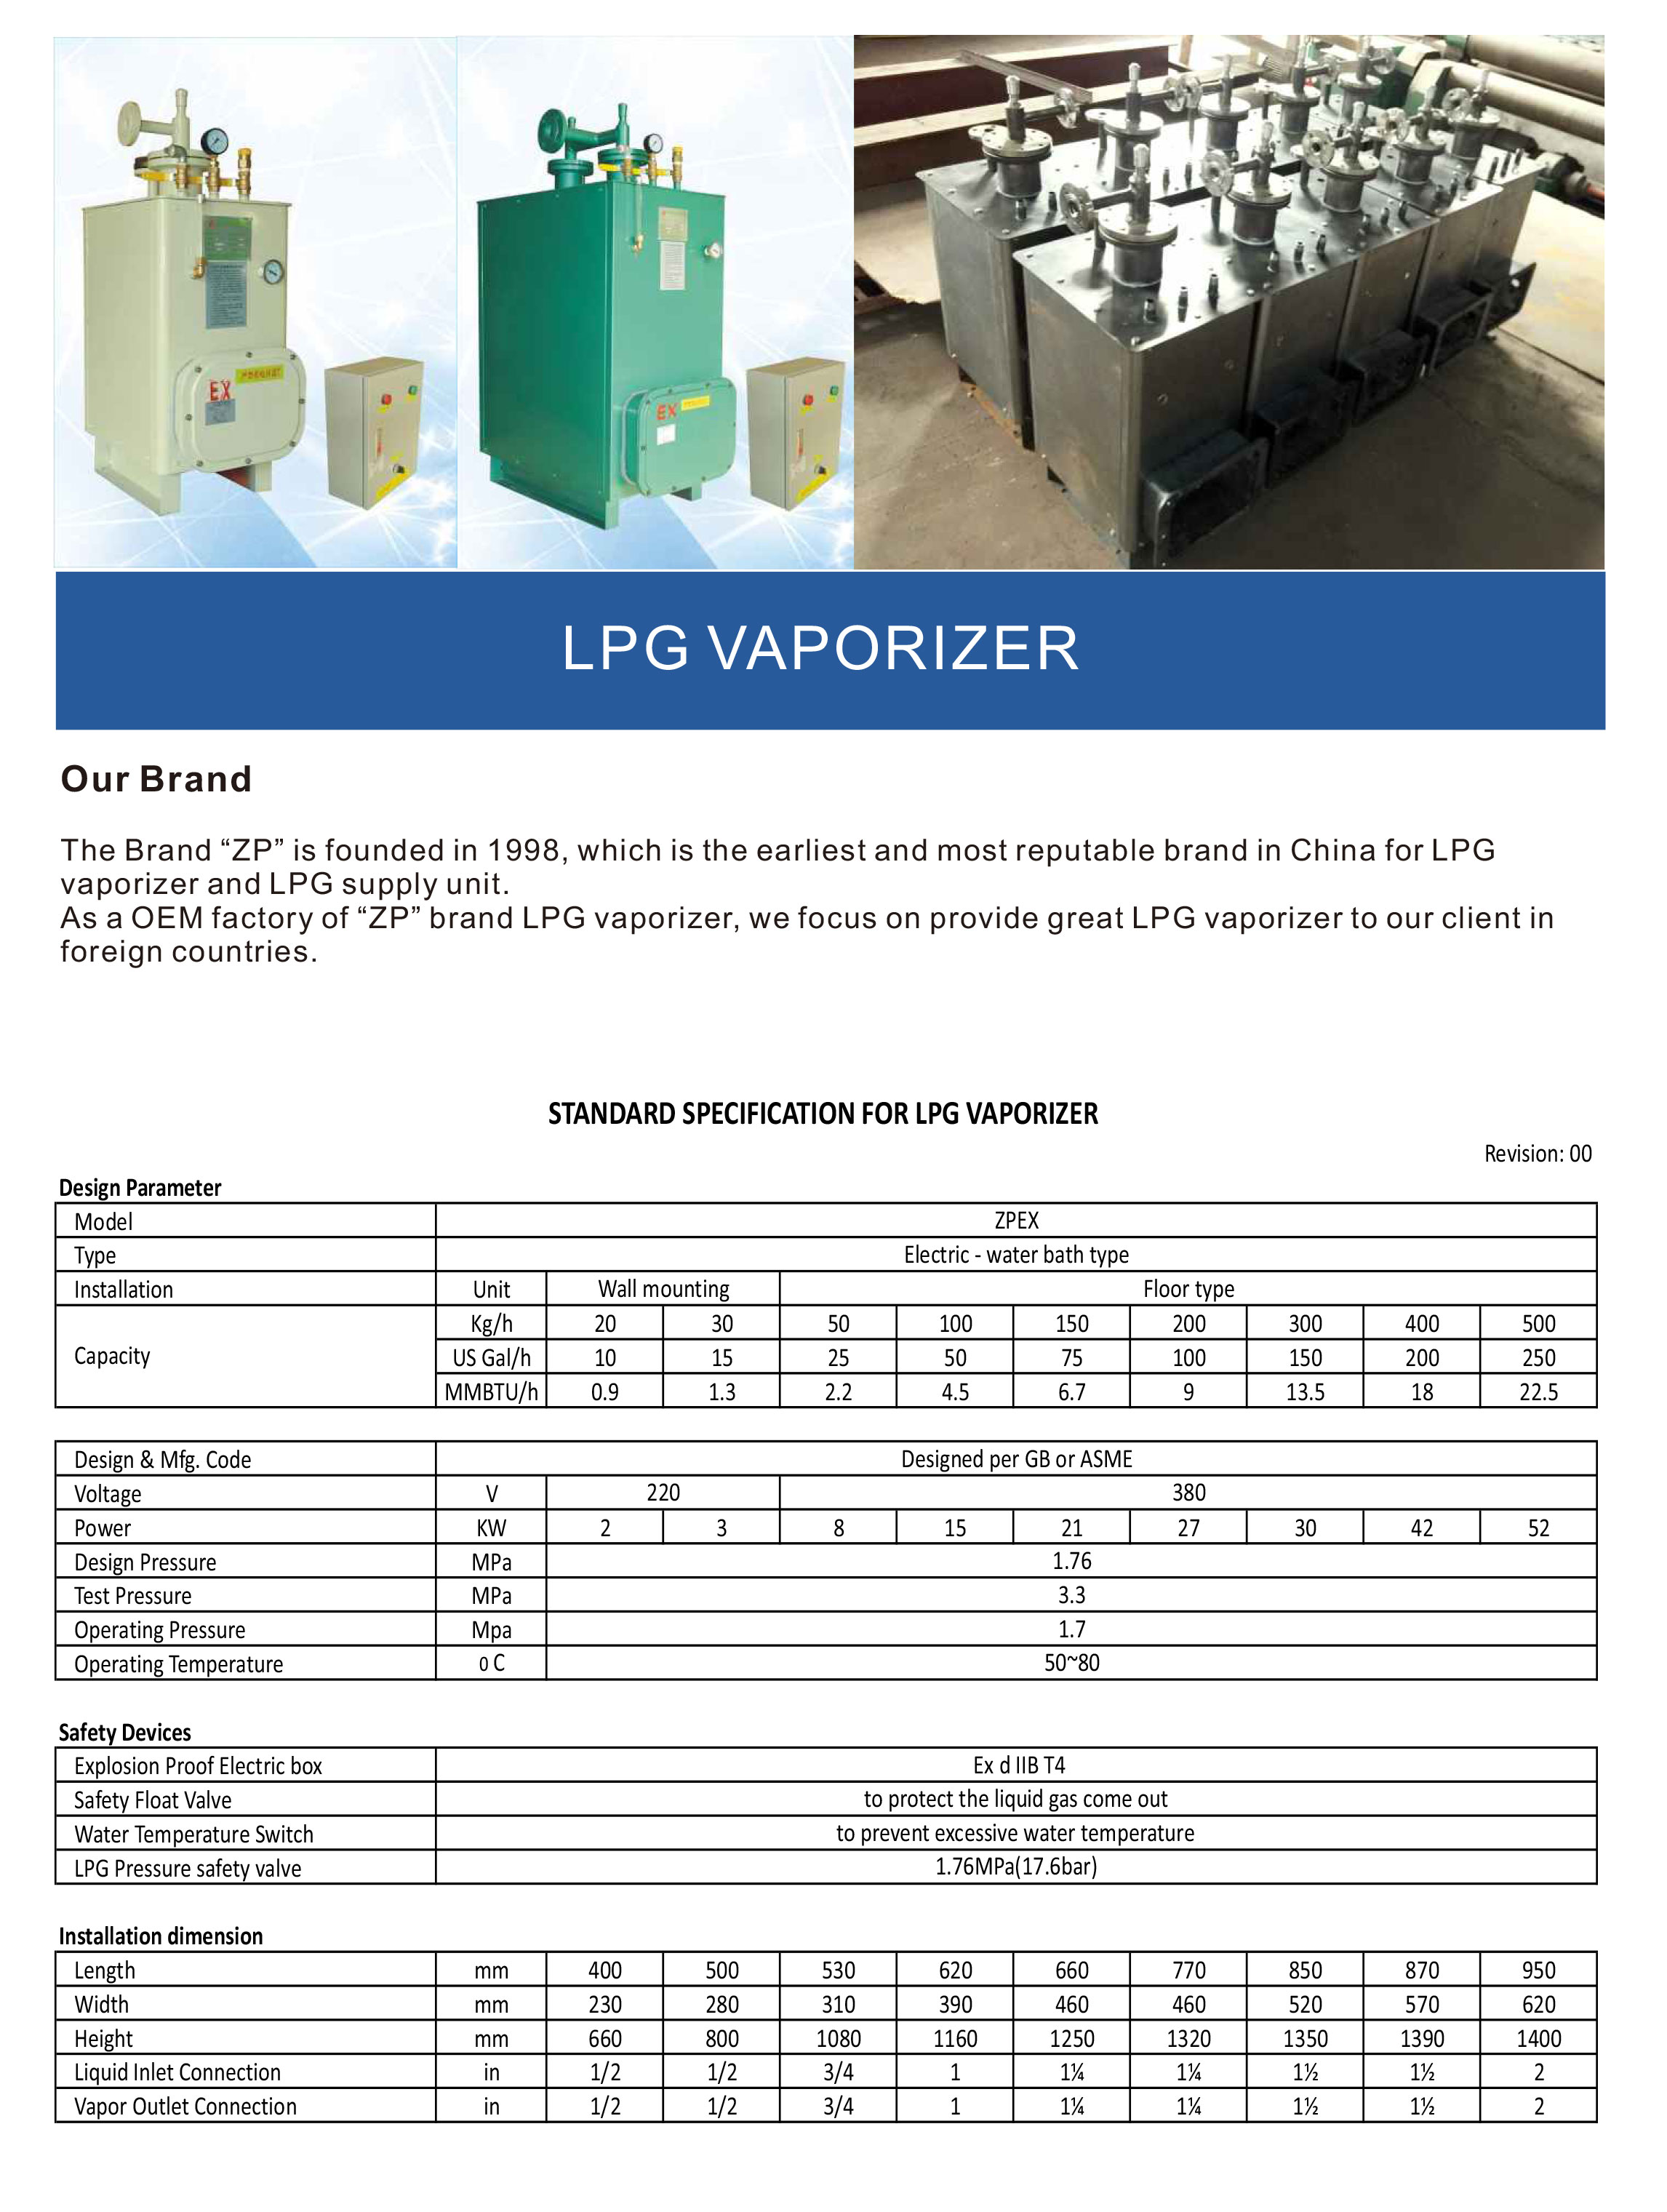 LPG-Vaporizer1